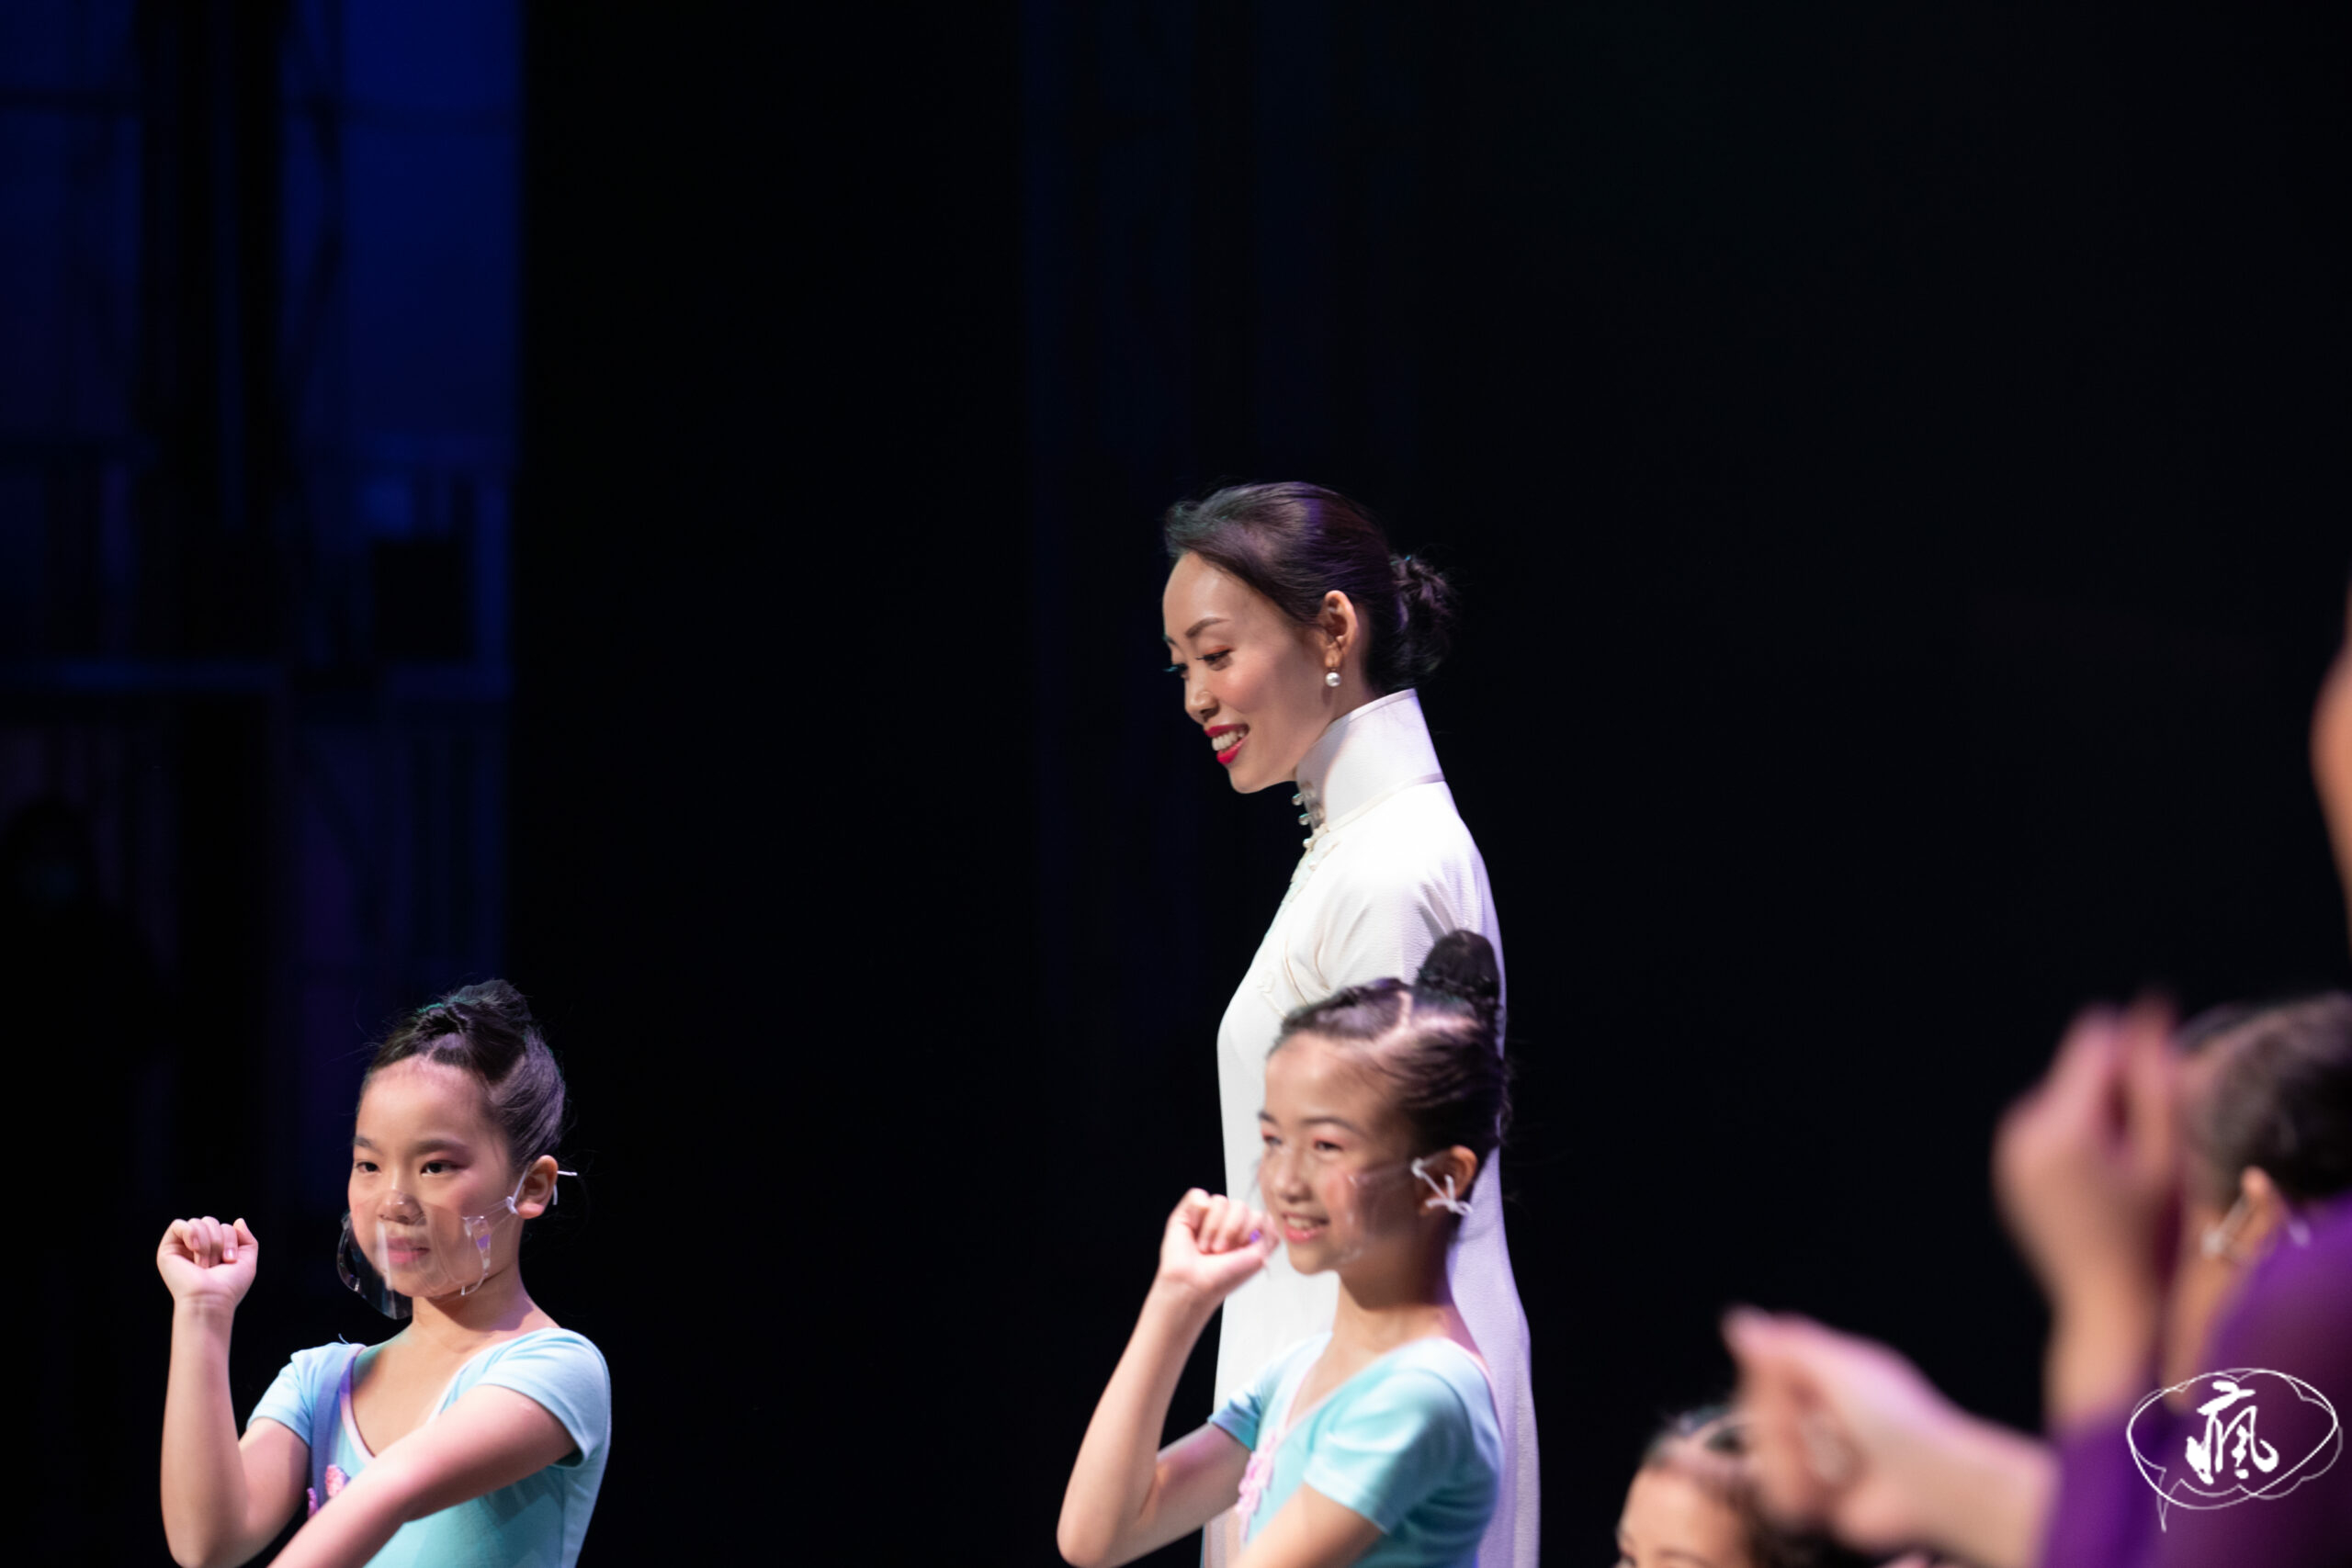 生命能以舞蹈的美態綻放——專訪陳小玉